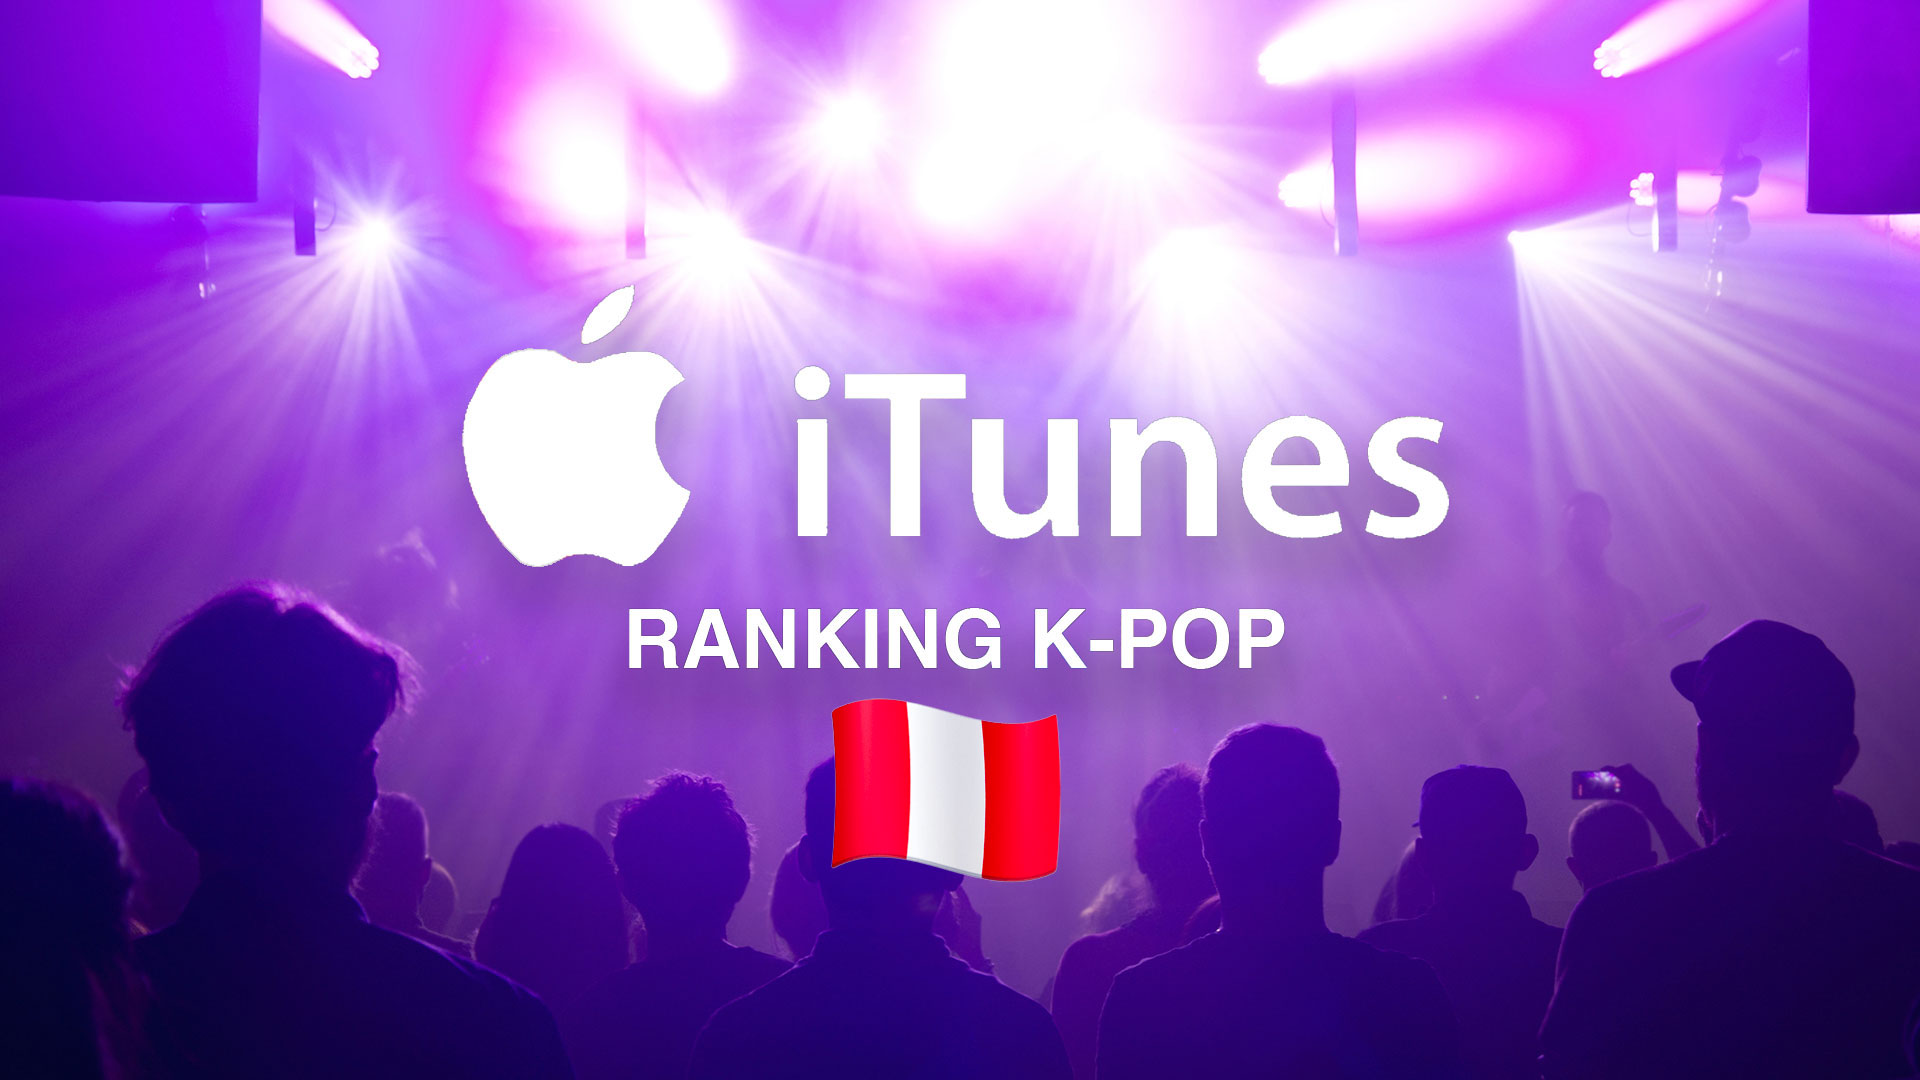 BTS domina la lista de lo más escuchado del K-pop en Perú